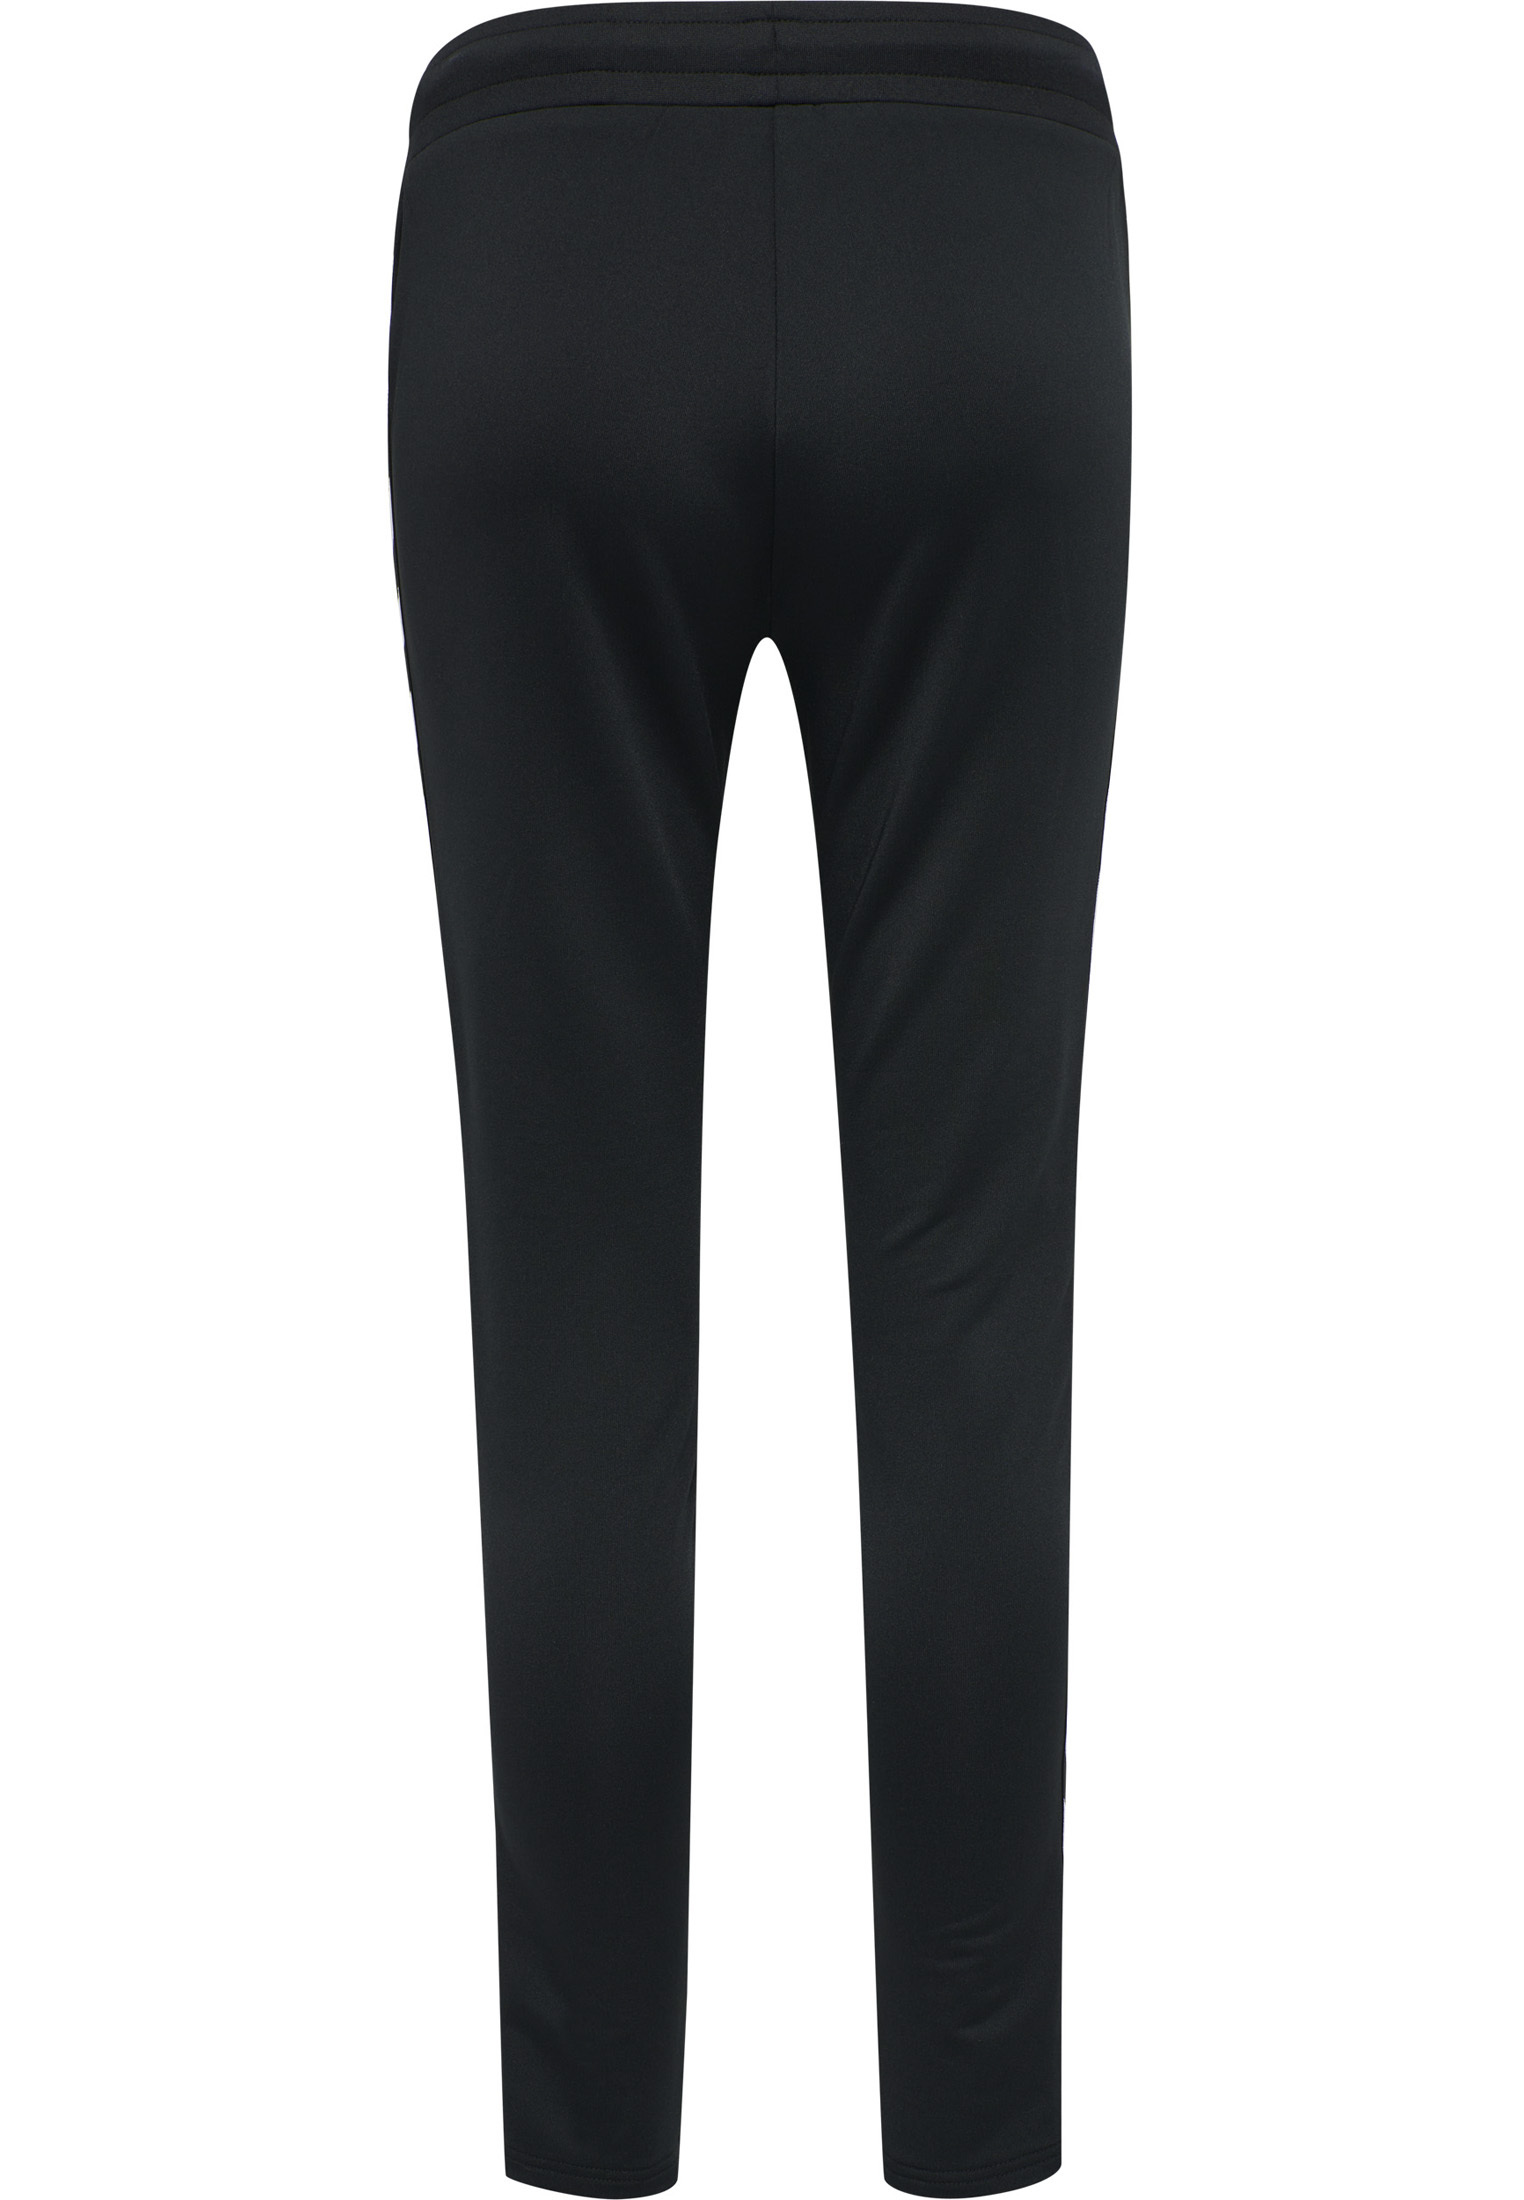 Kobiety Dziedziny sportowe Hummel Spodnie sportowe NELLY 2.3 w kolorze Czarnym 